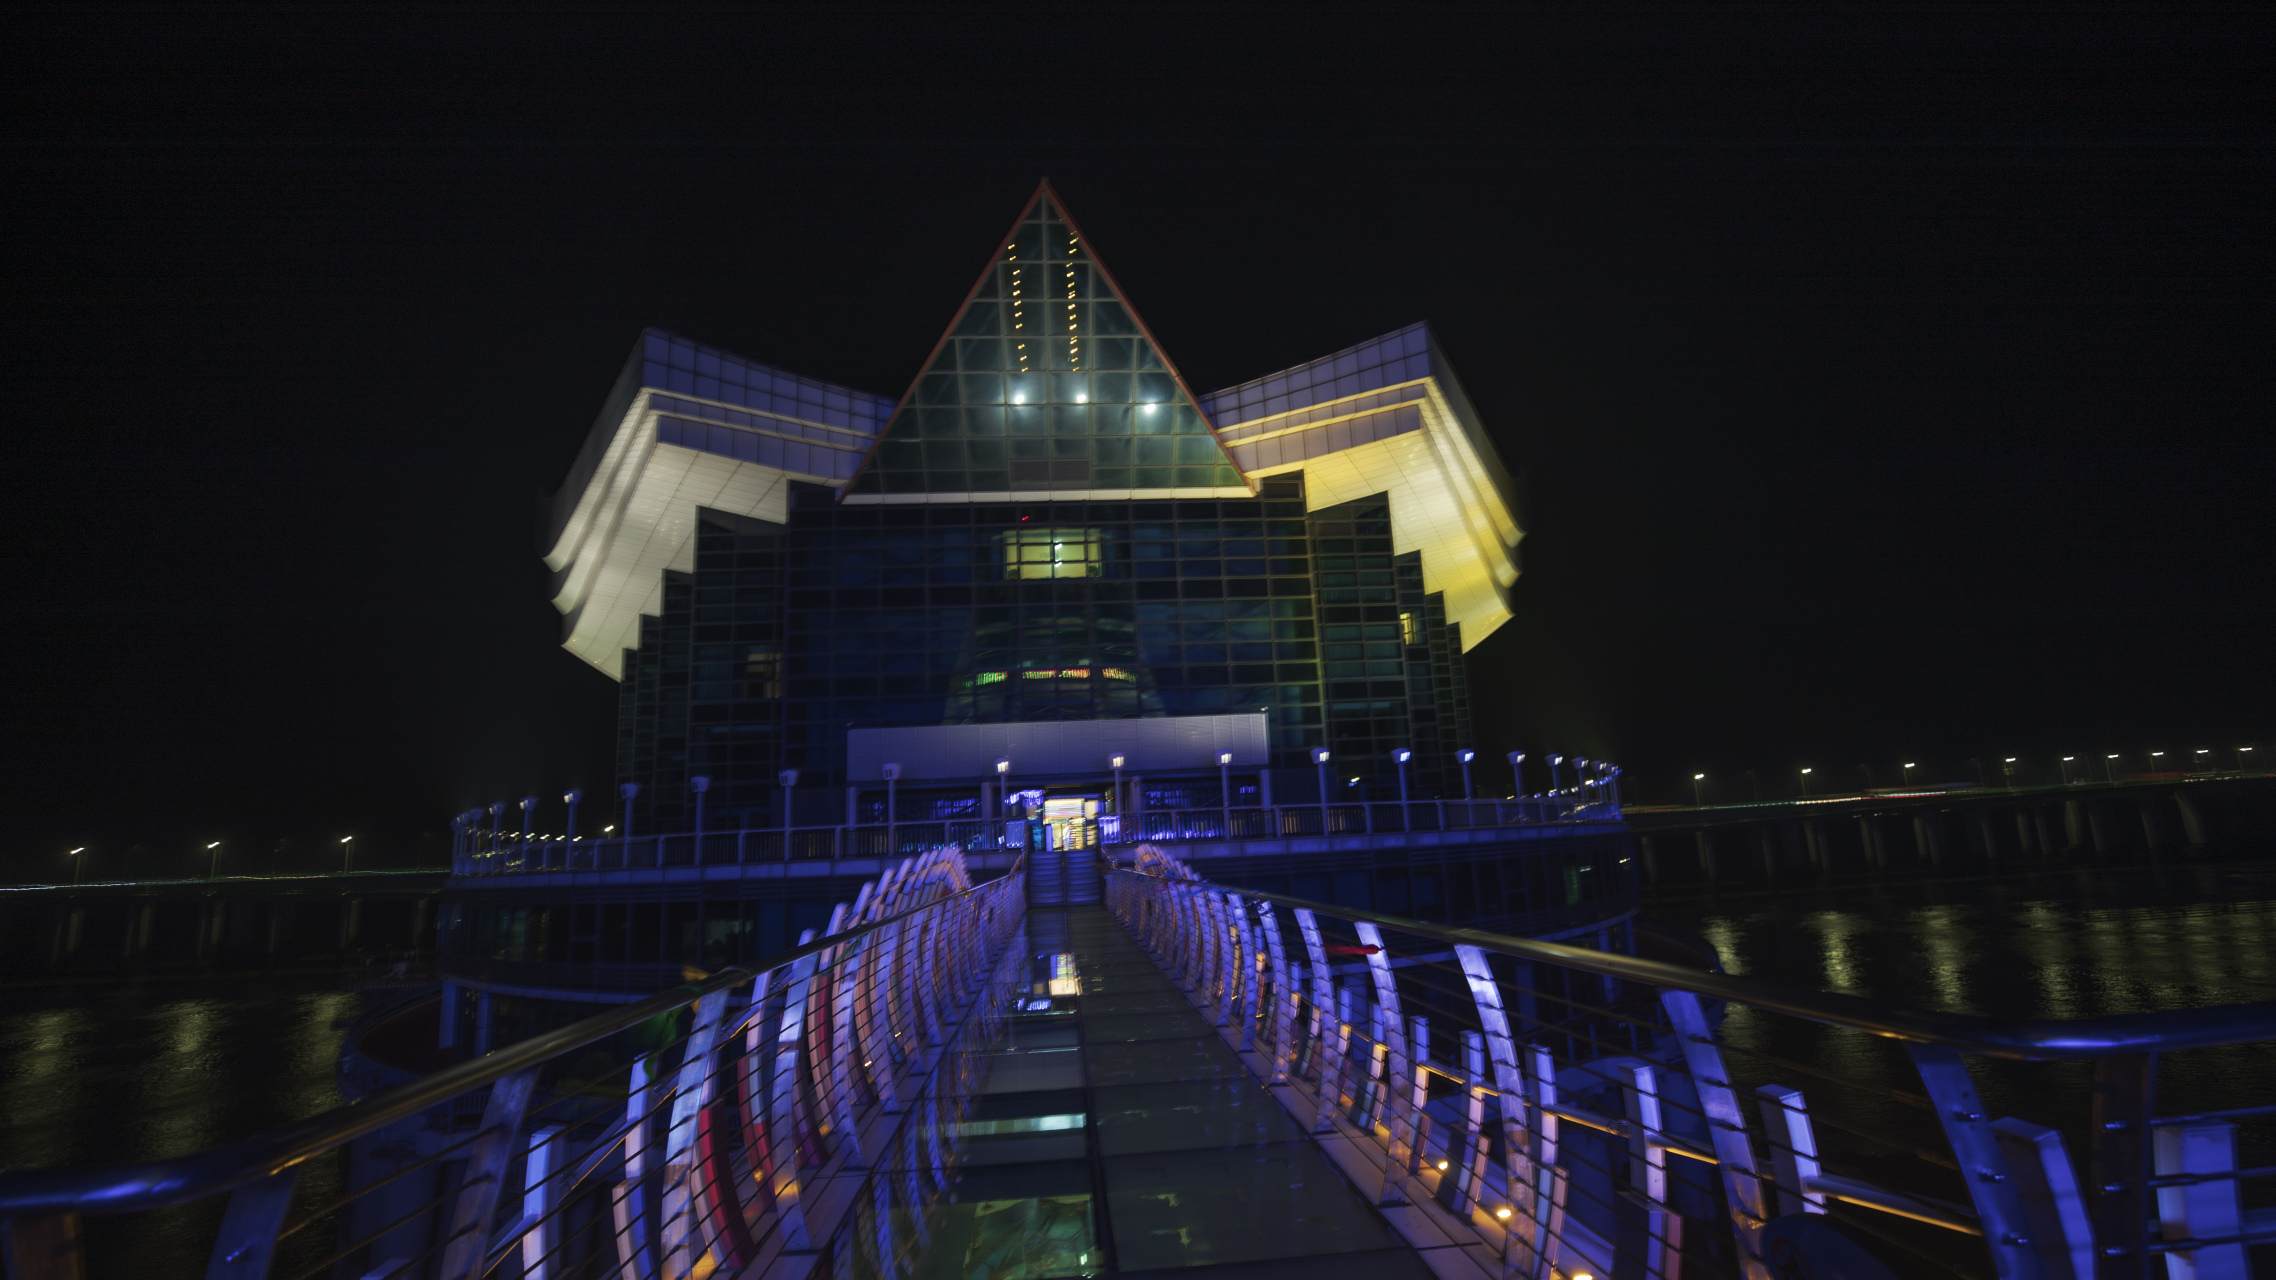 杭州湾跨海大桥夜景图片